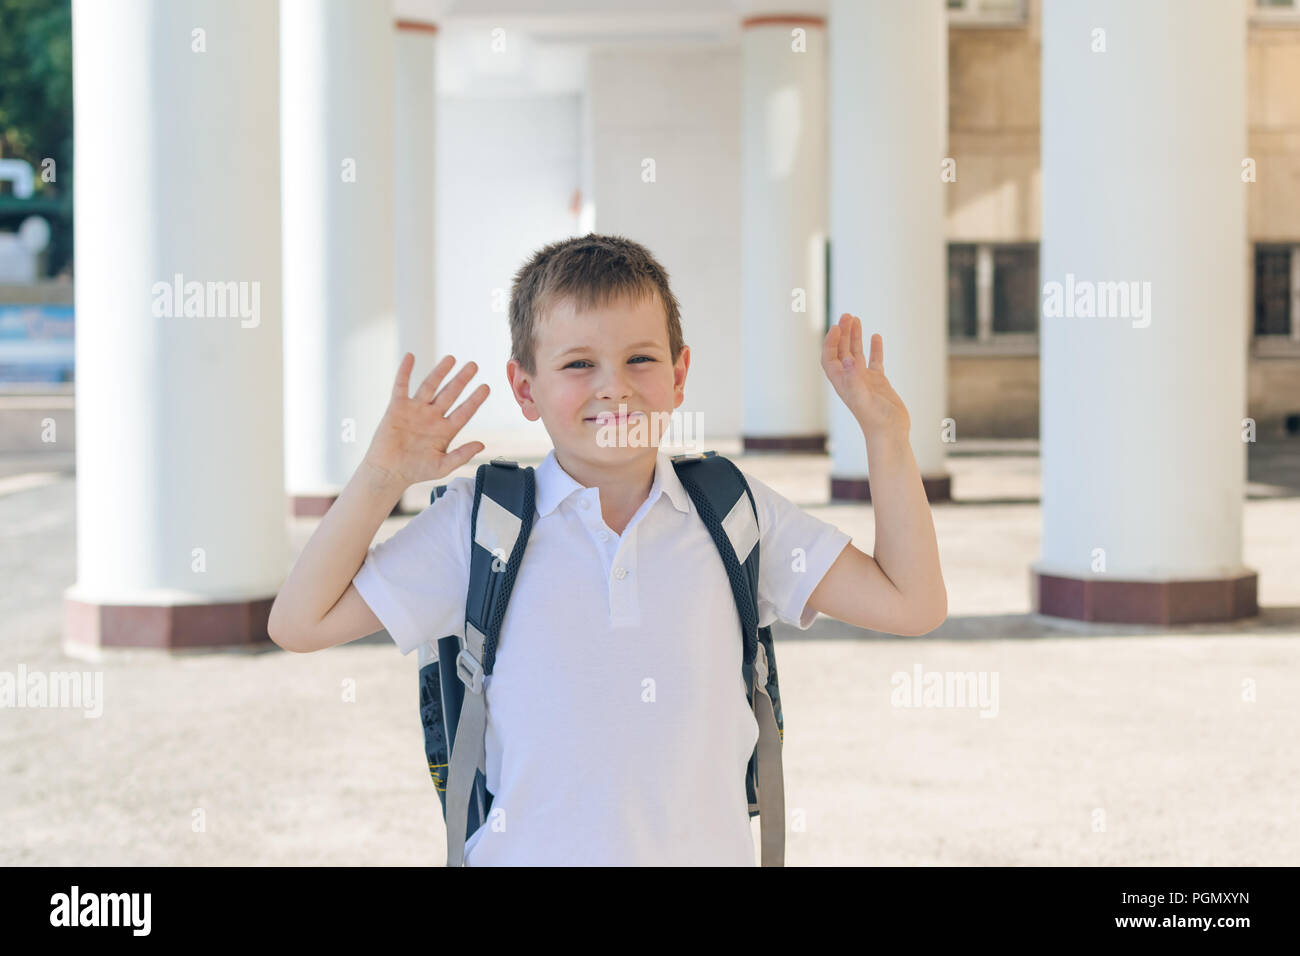 Camisa blanca uniforme escolar fotografías imágenes de alta resolución - Alamy